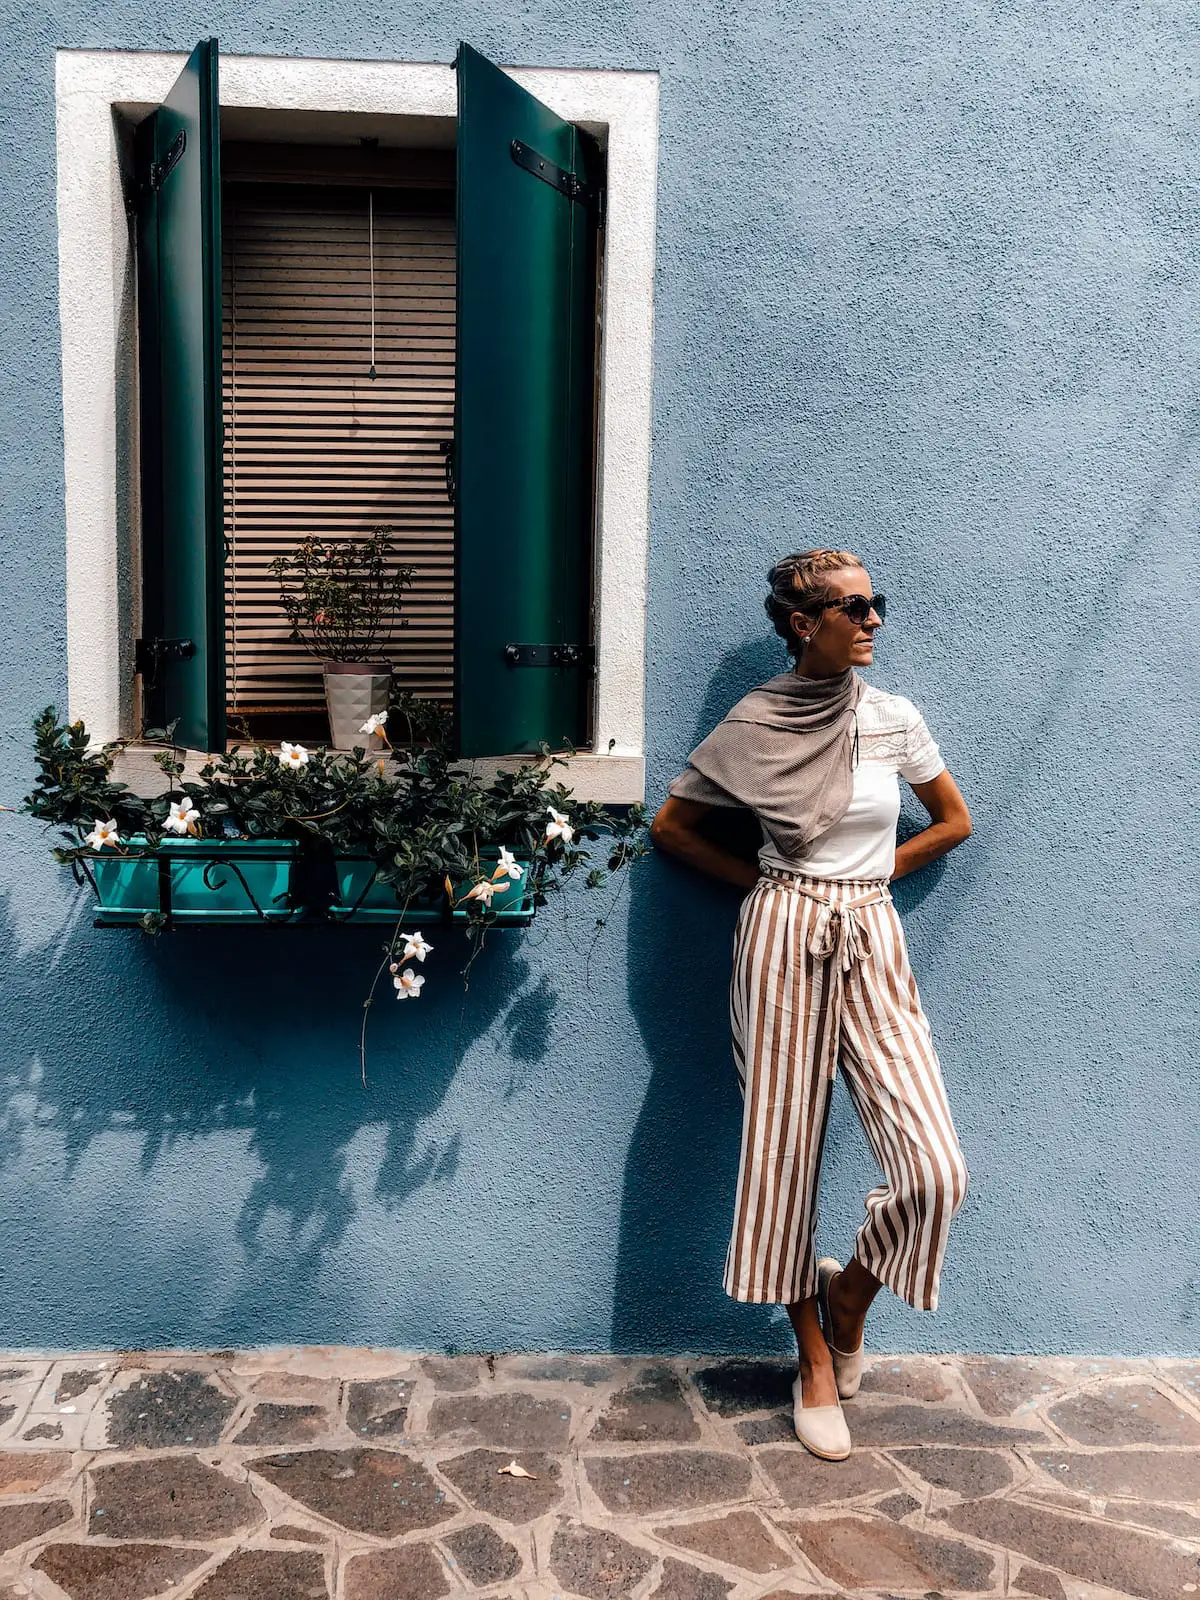 Bunte Hausfassade in Venedig, ein typisches Instagram Motiv.